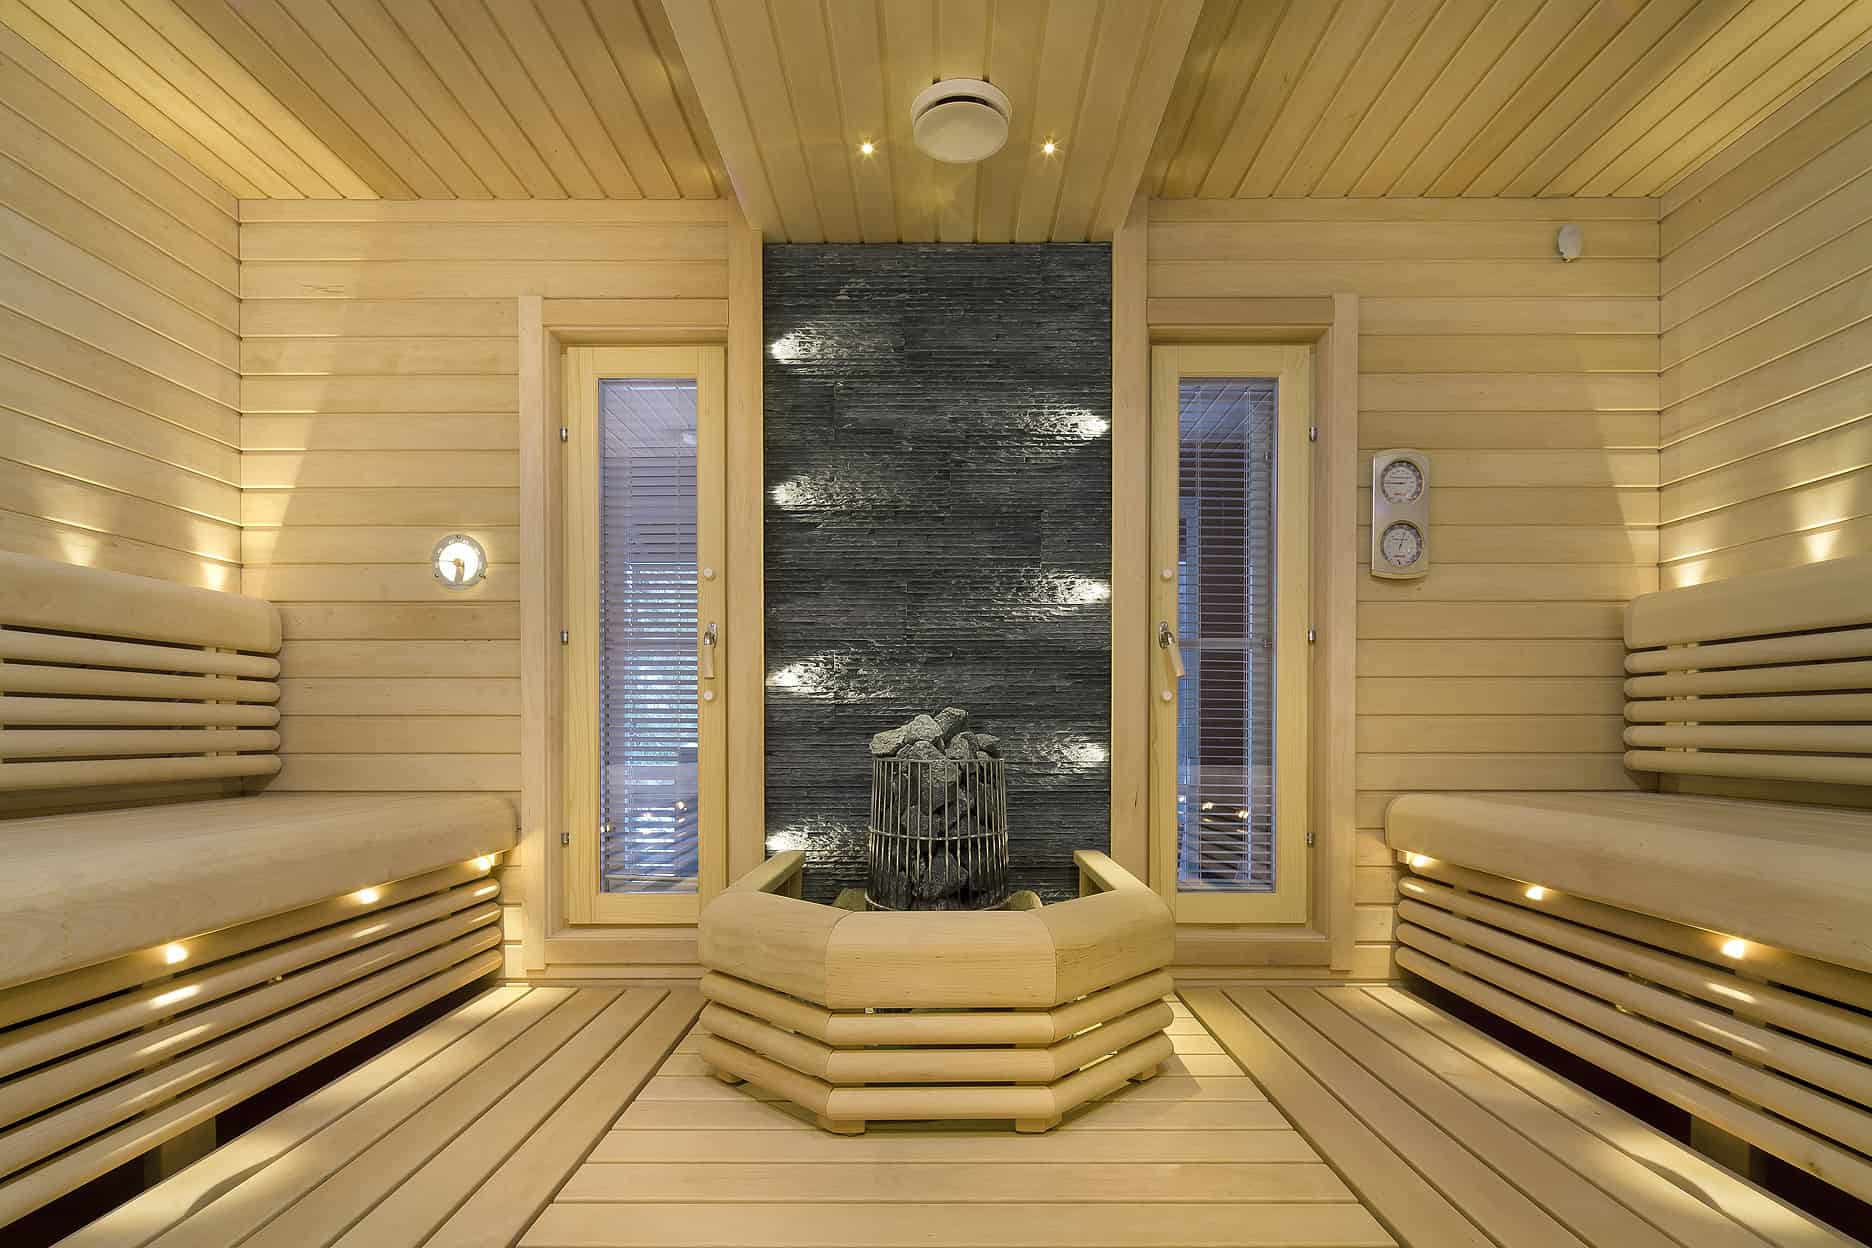 Lämpöhirssilinnan Rakkavaarassa, sauna